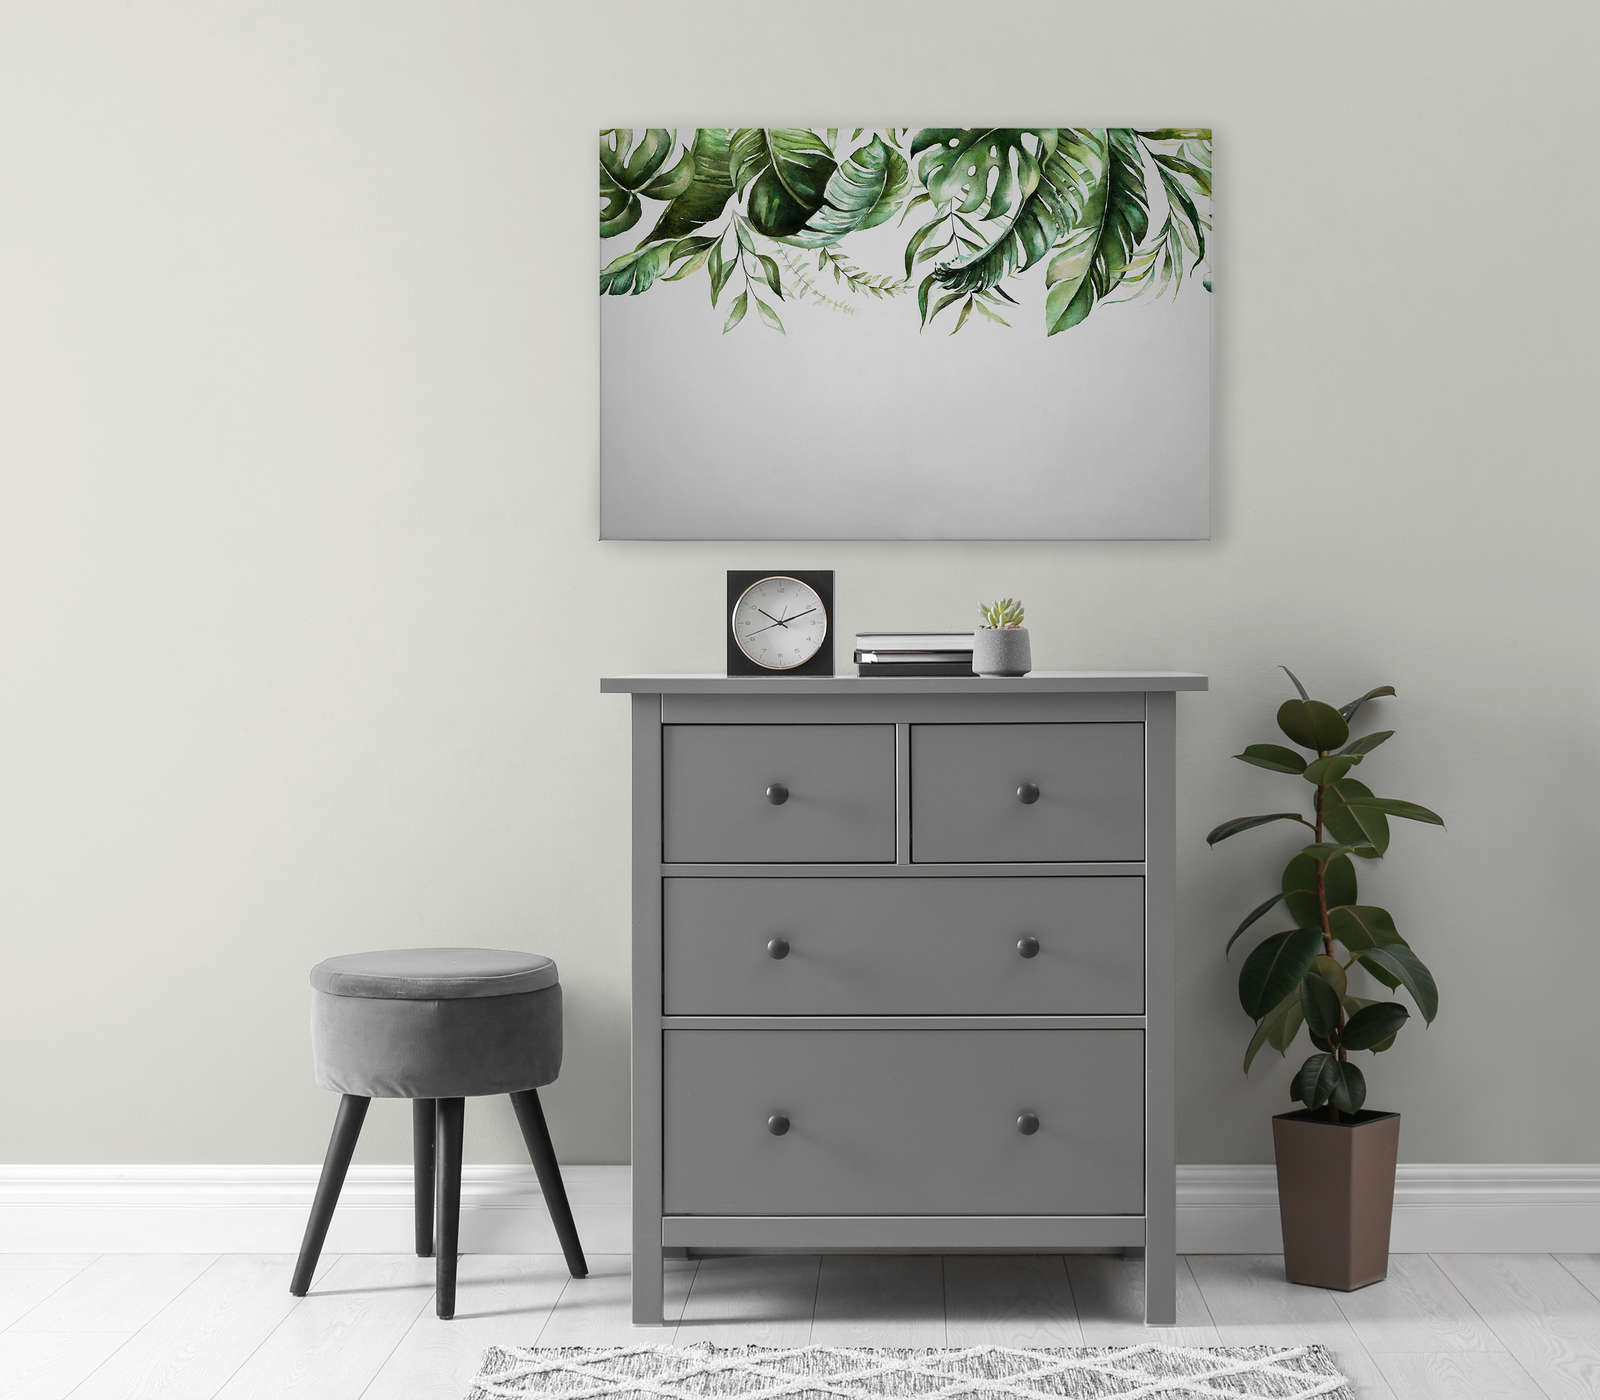             Canvas schilderij met tropische bladranken op een muur - 0.90 m x 0.60 m
        